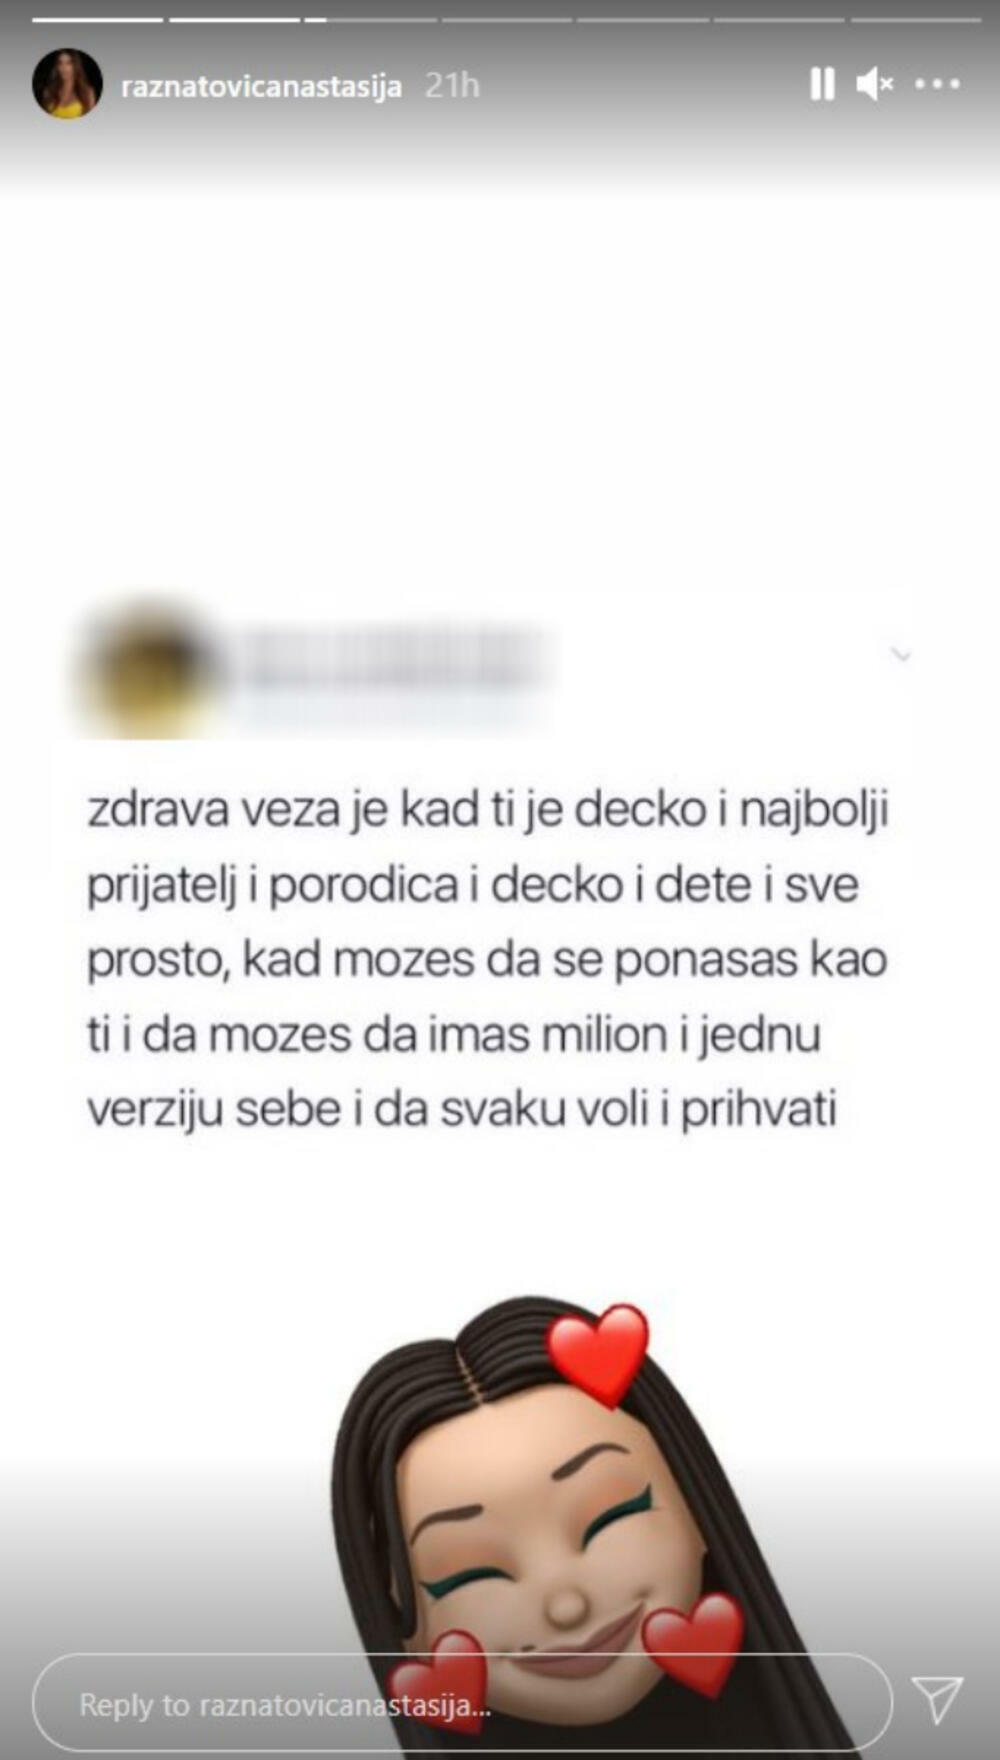 Anastasija Ražnatović, instagram priča